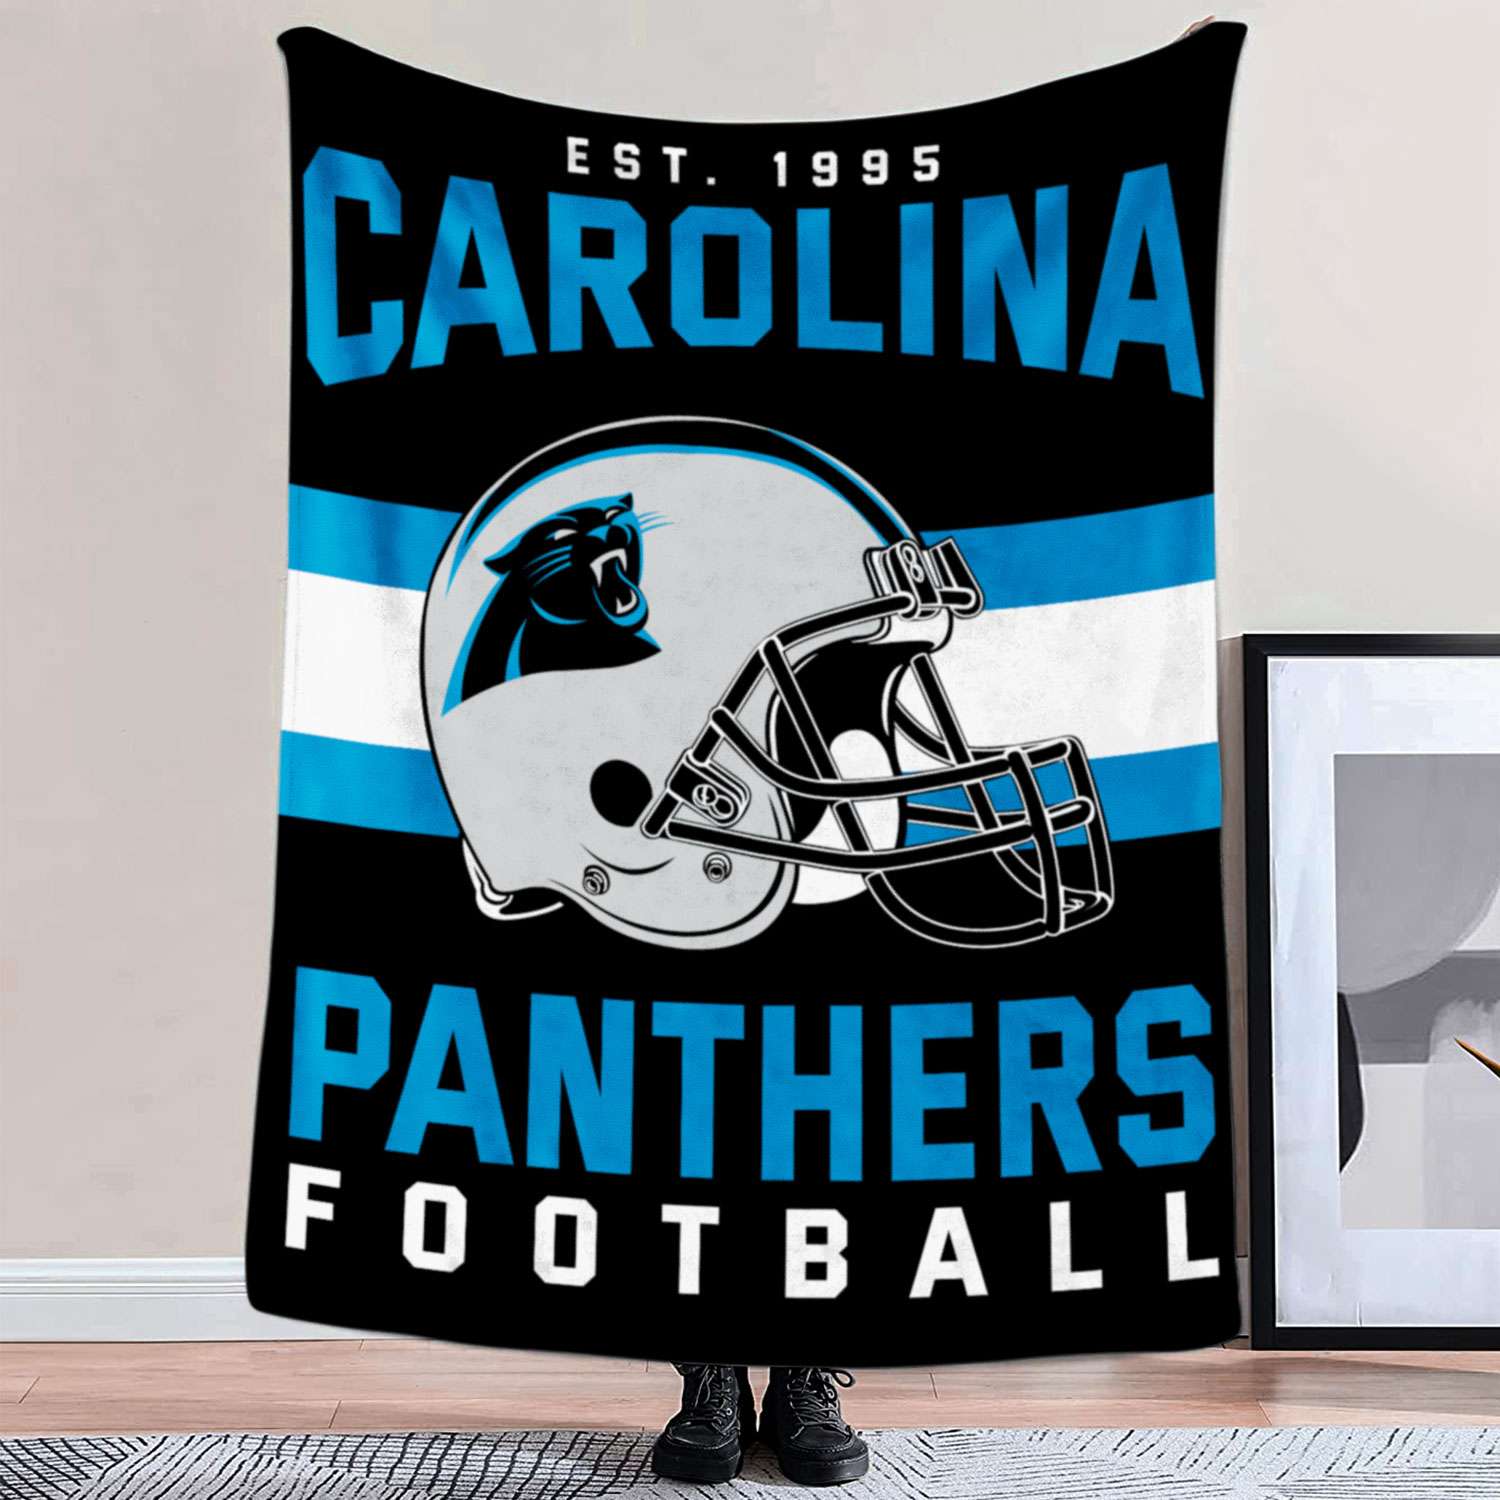 Carolina Panthers NFL Football Team Helmet Blanket